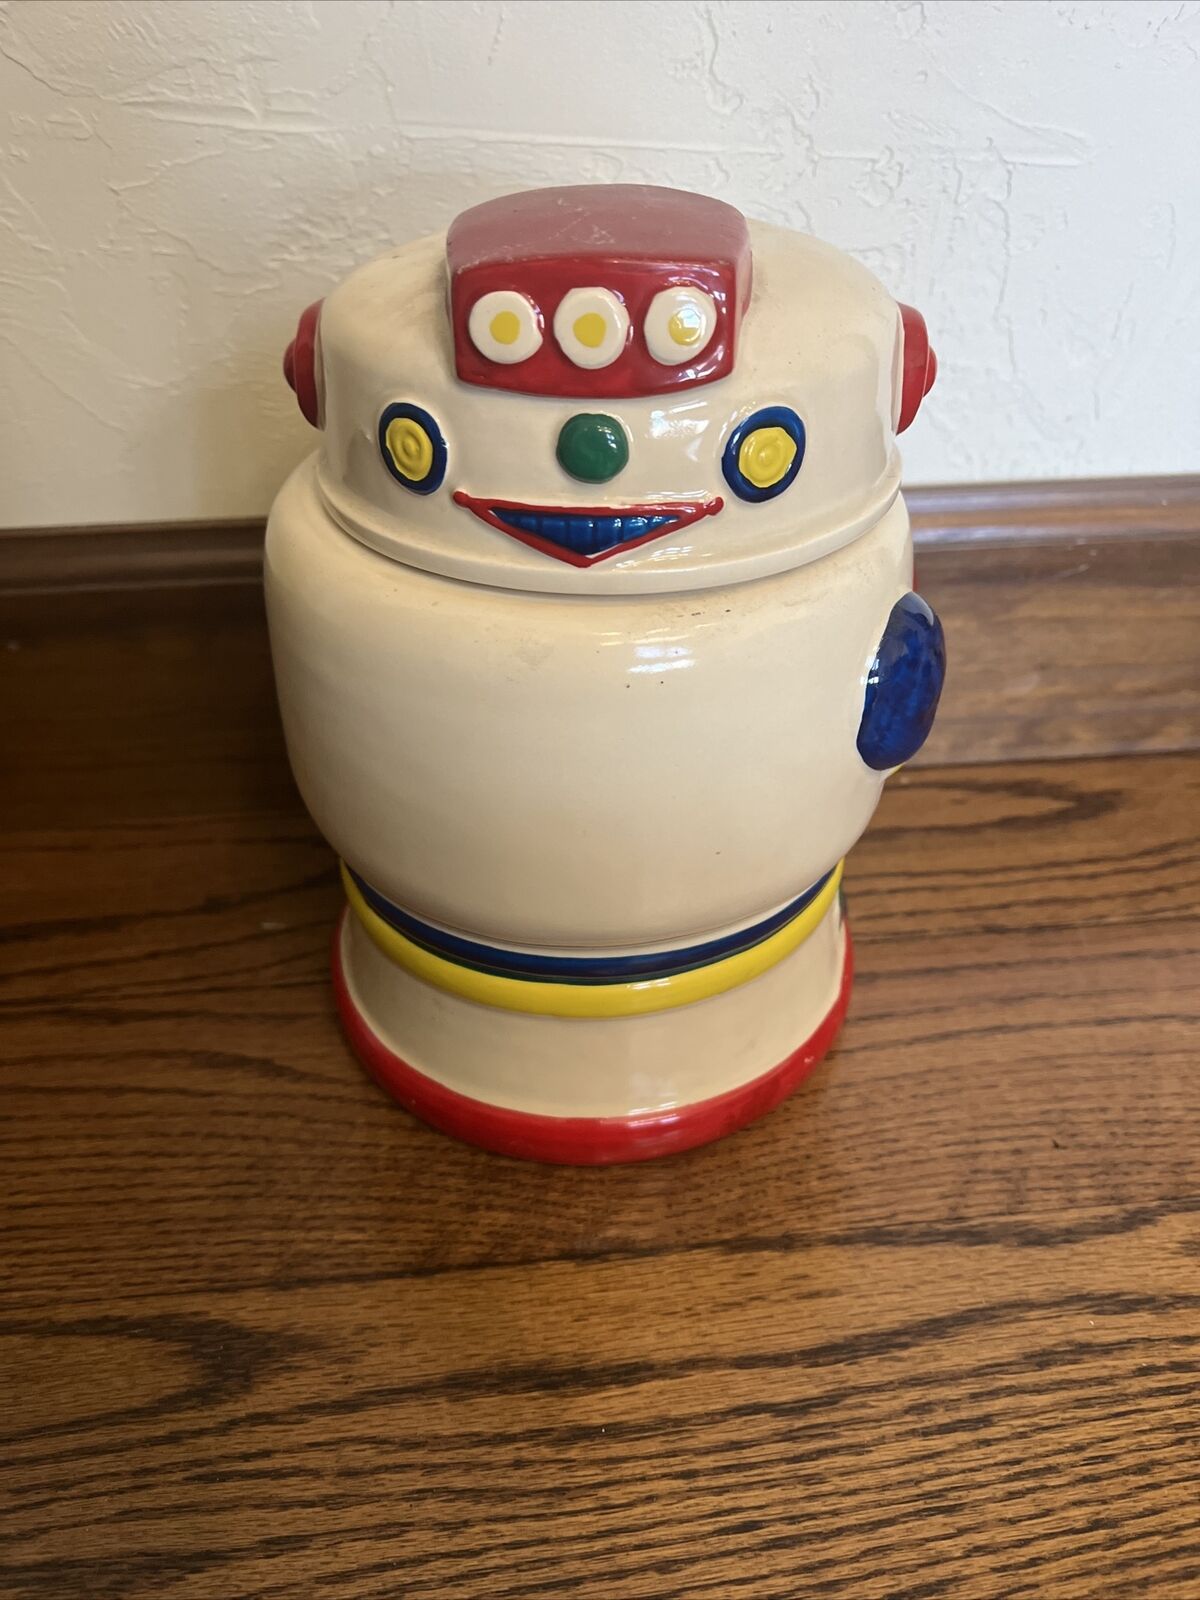 Vintage WhiteBot Robot Ceramic Cookie Jar Taylor NG Win Japan San Francisco 1985